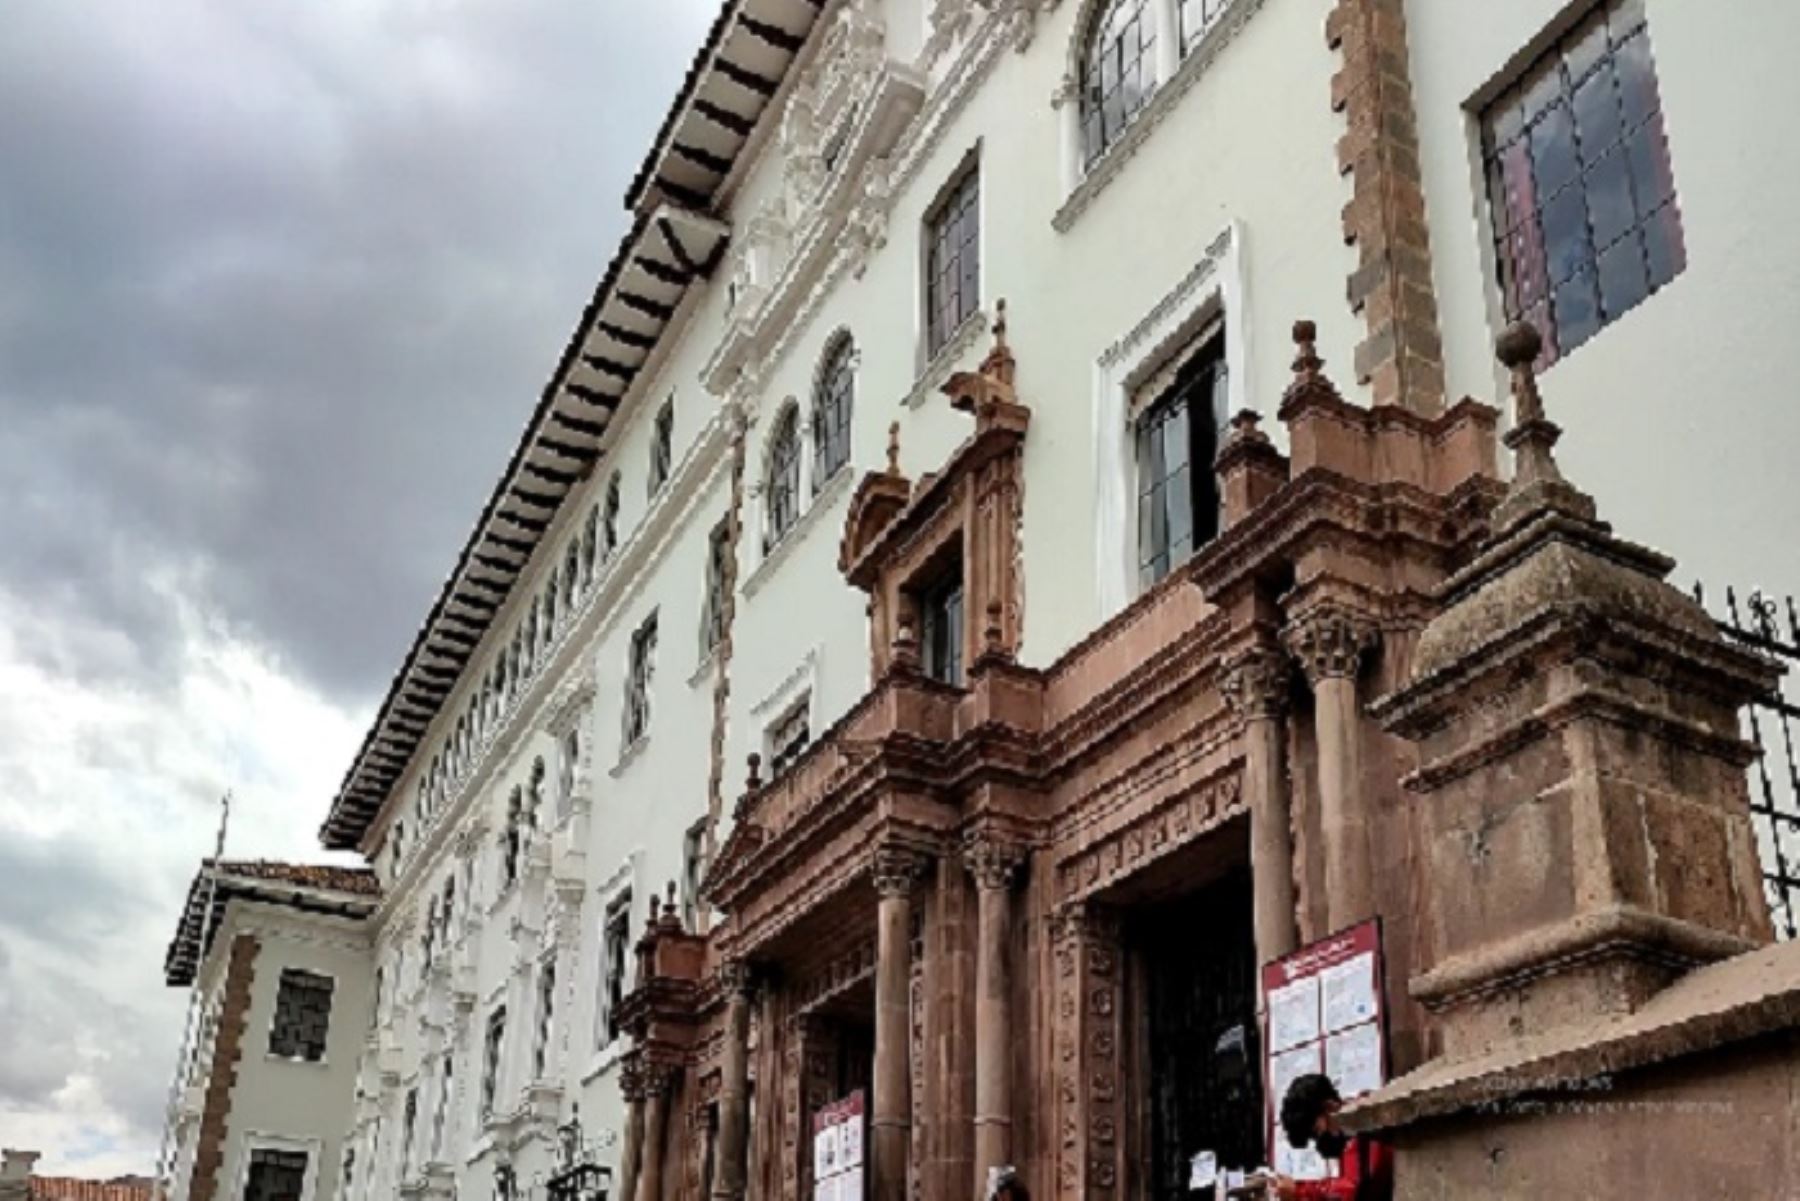 La Corte Superior del Cusco considera necesario sensibilizar al Gobierno nacional para de manera inmediata disponer la descentralización del proceso de vacunación para los trabajadores del sector público y privado. Foto: ANDINA/Difusión